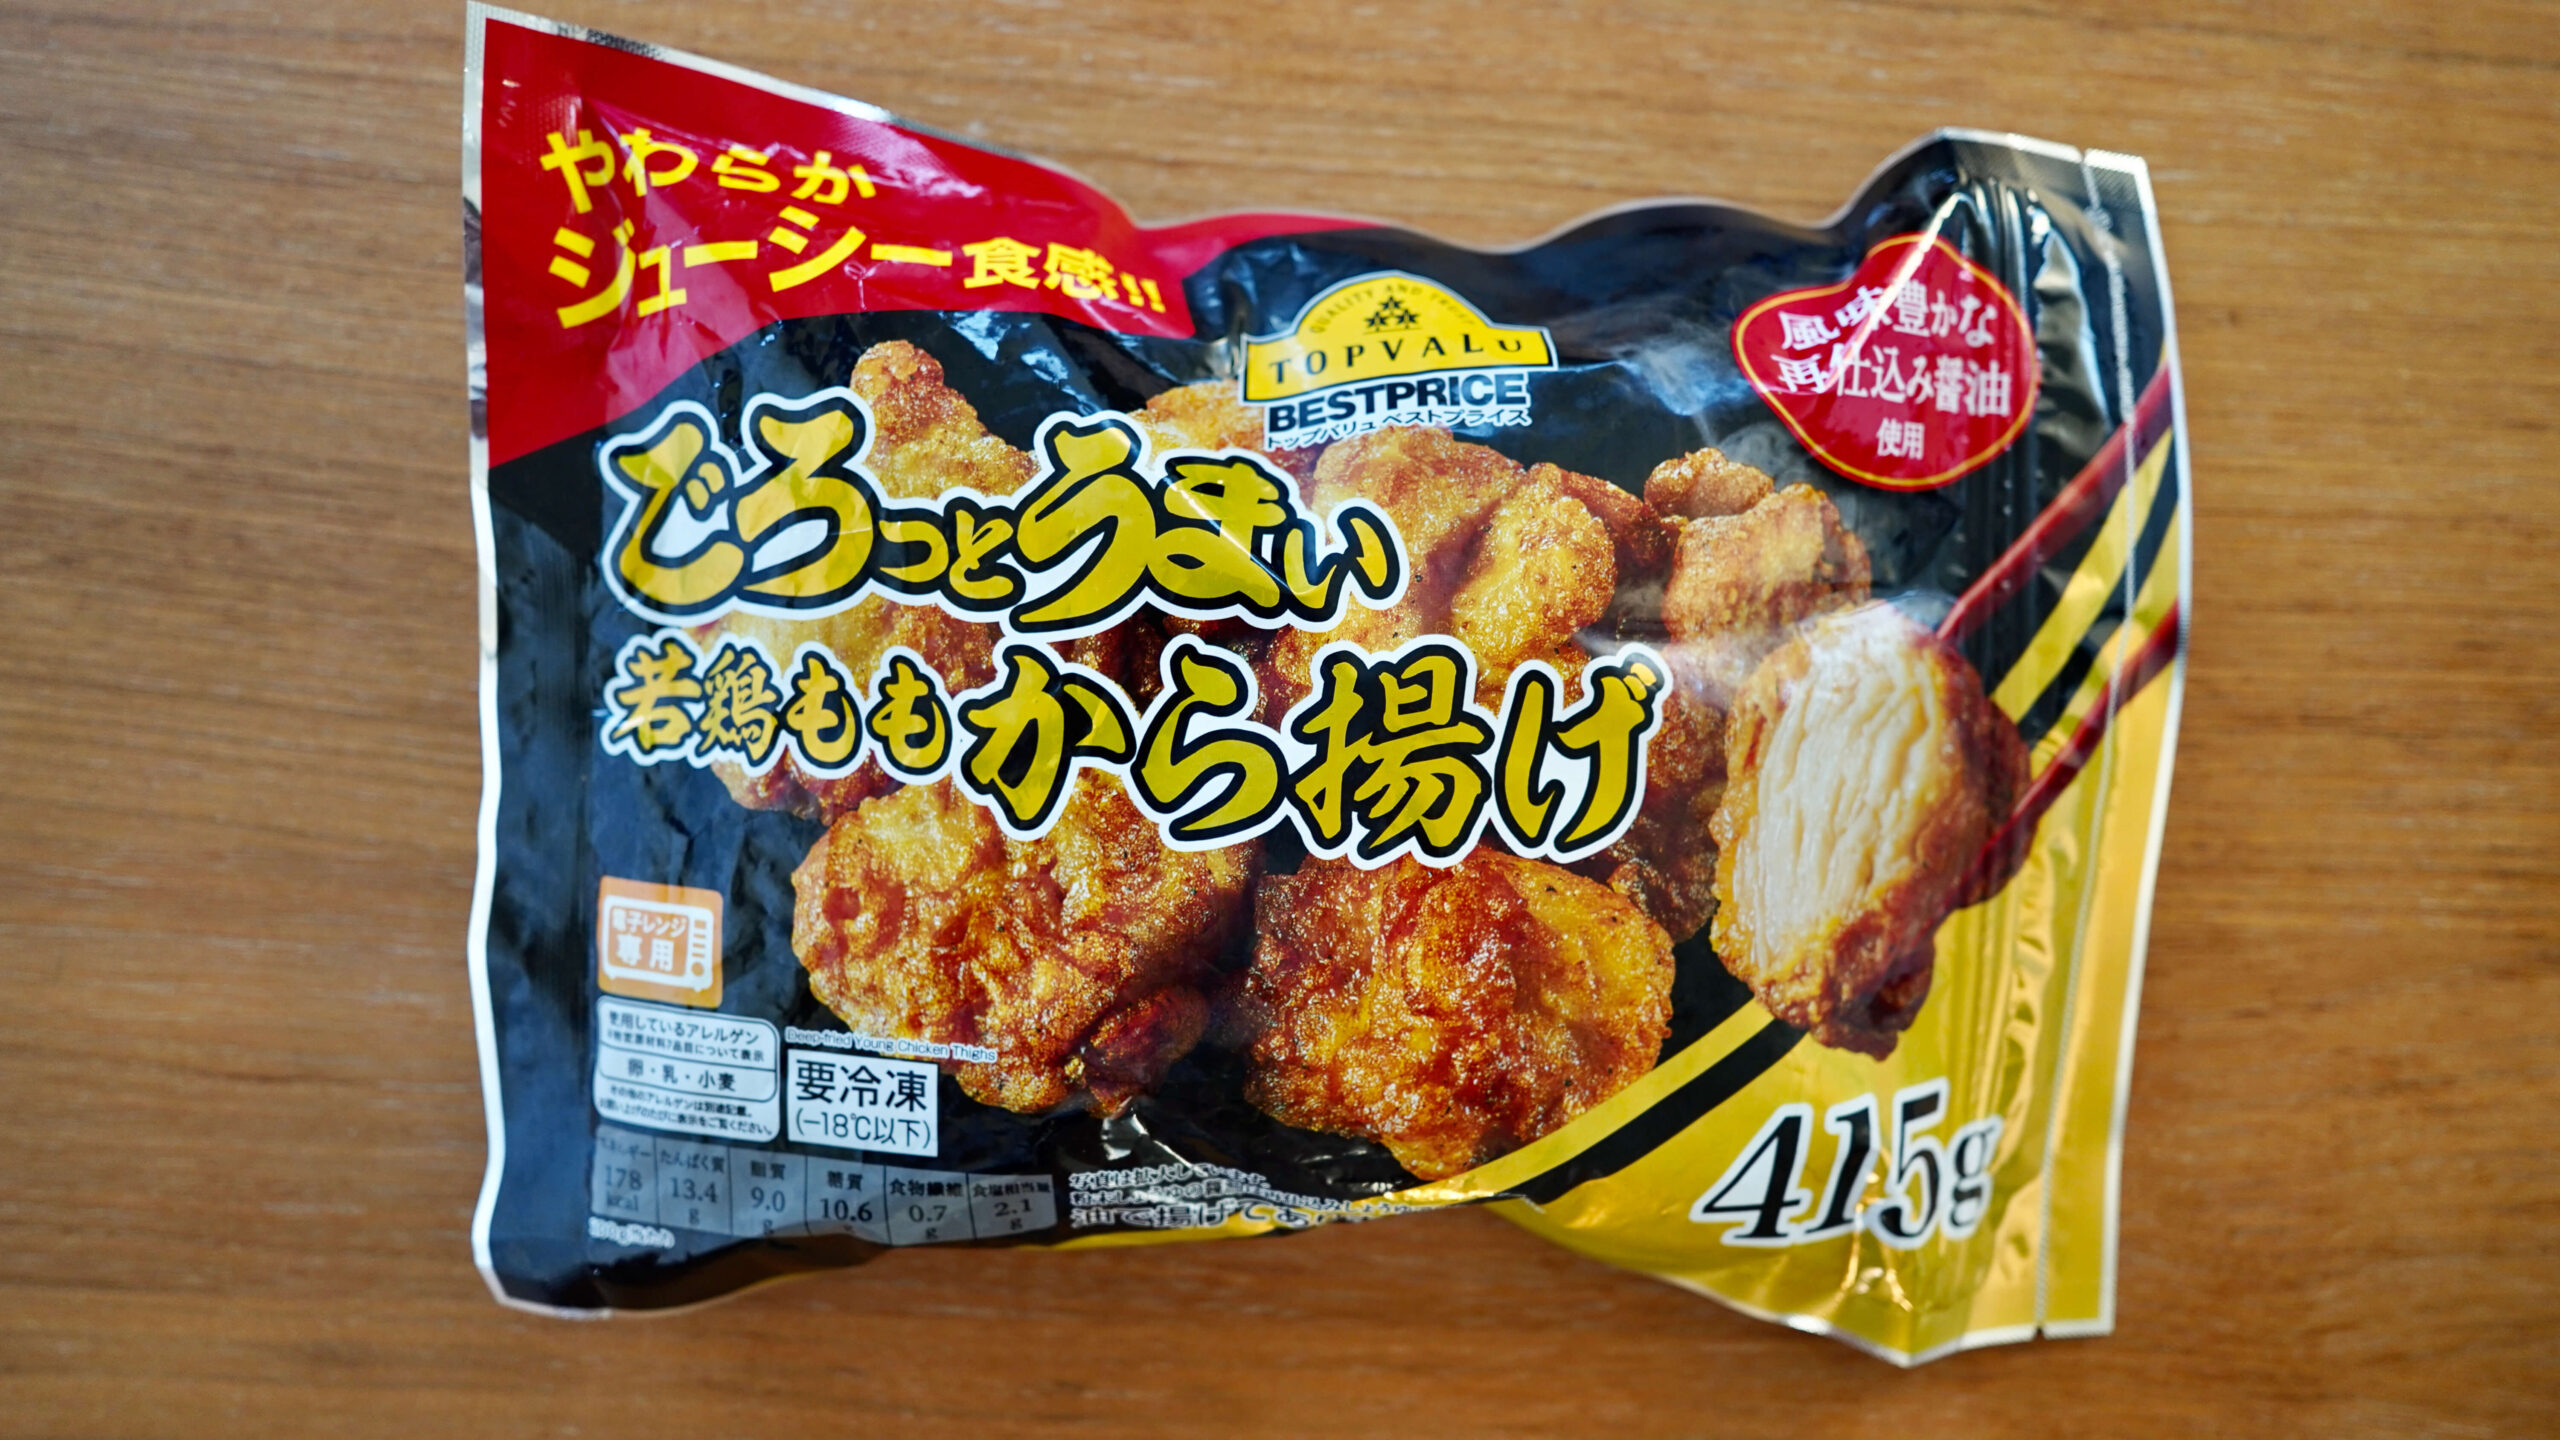 イオン・トップバリュおすすめ冷凍食品「ごろっとうまい若鶏ももから揚げ」のパッケージ写真